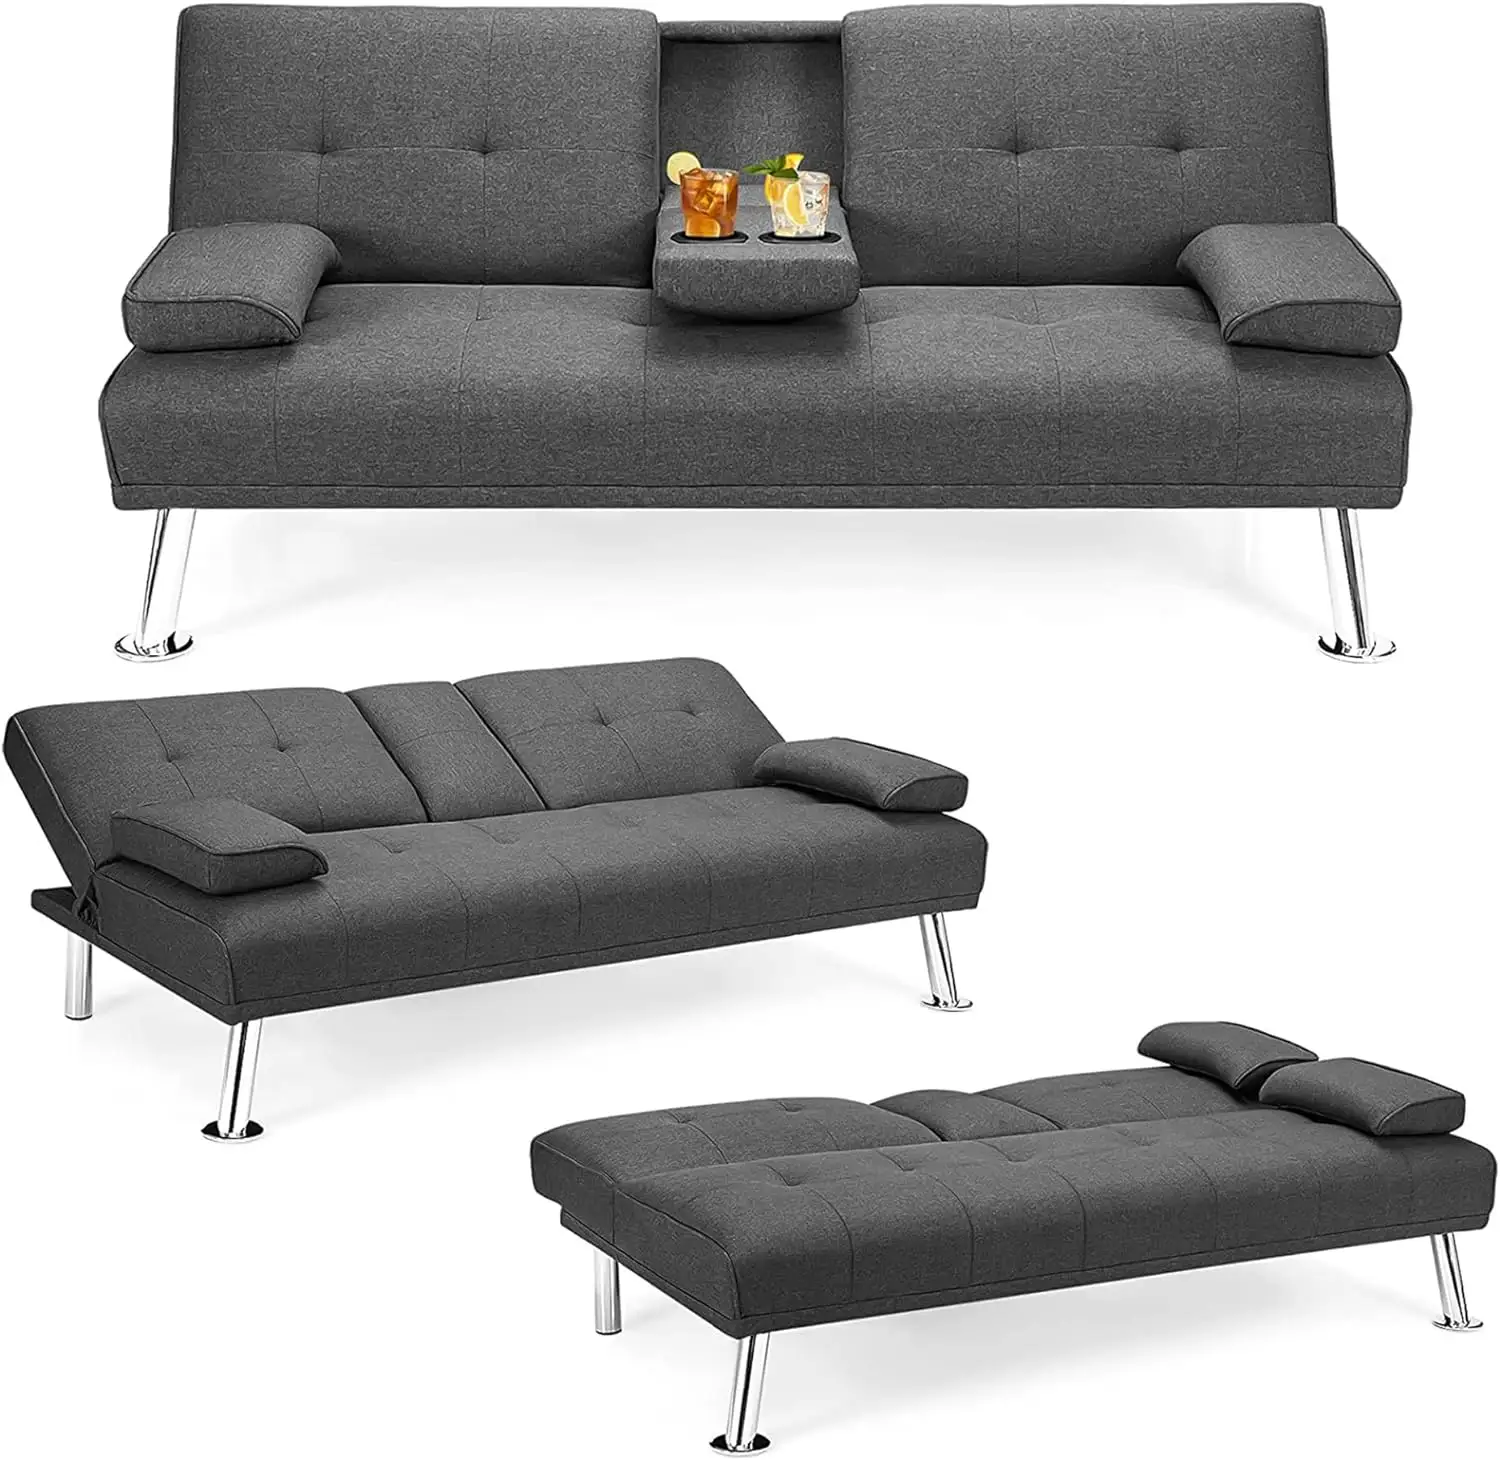 OEM/ODM con 2 portavasos ocultos, sofá de tela de lino con futón con mechones, Cama, sofá cama, sofá cama, sofá convertible ajustable de 3 ángulos